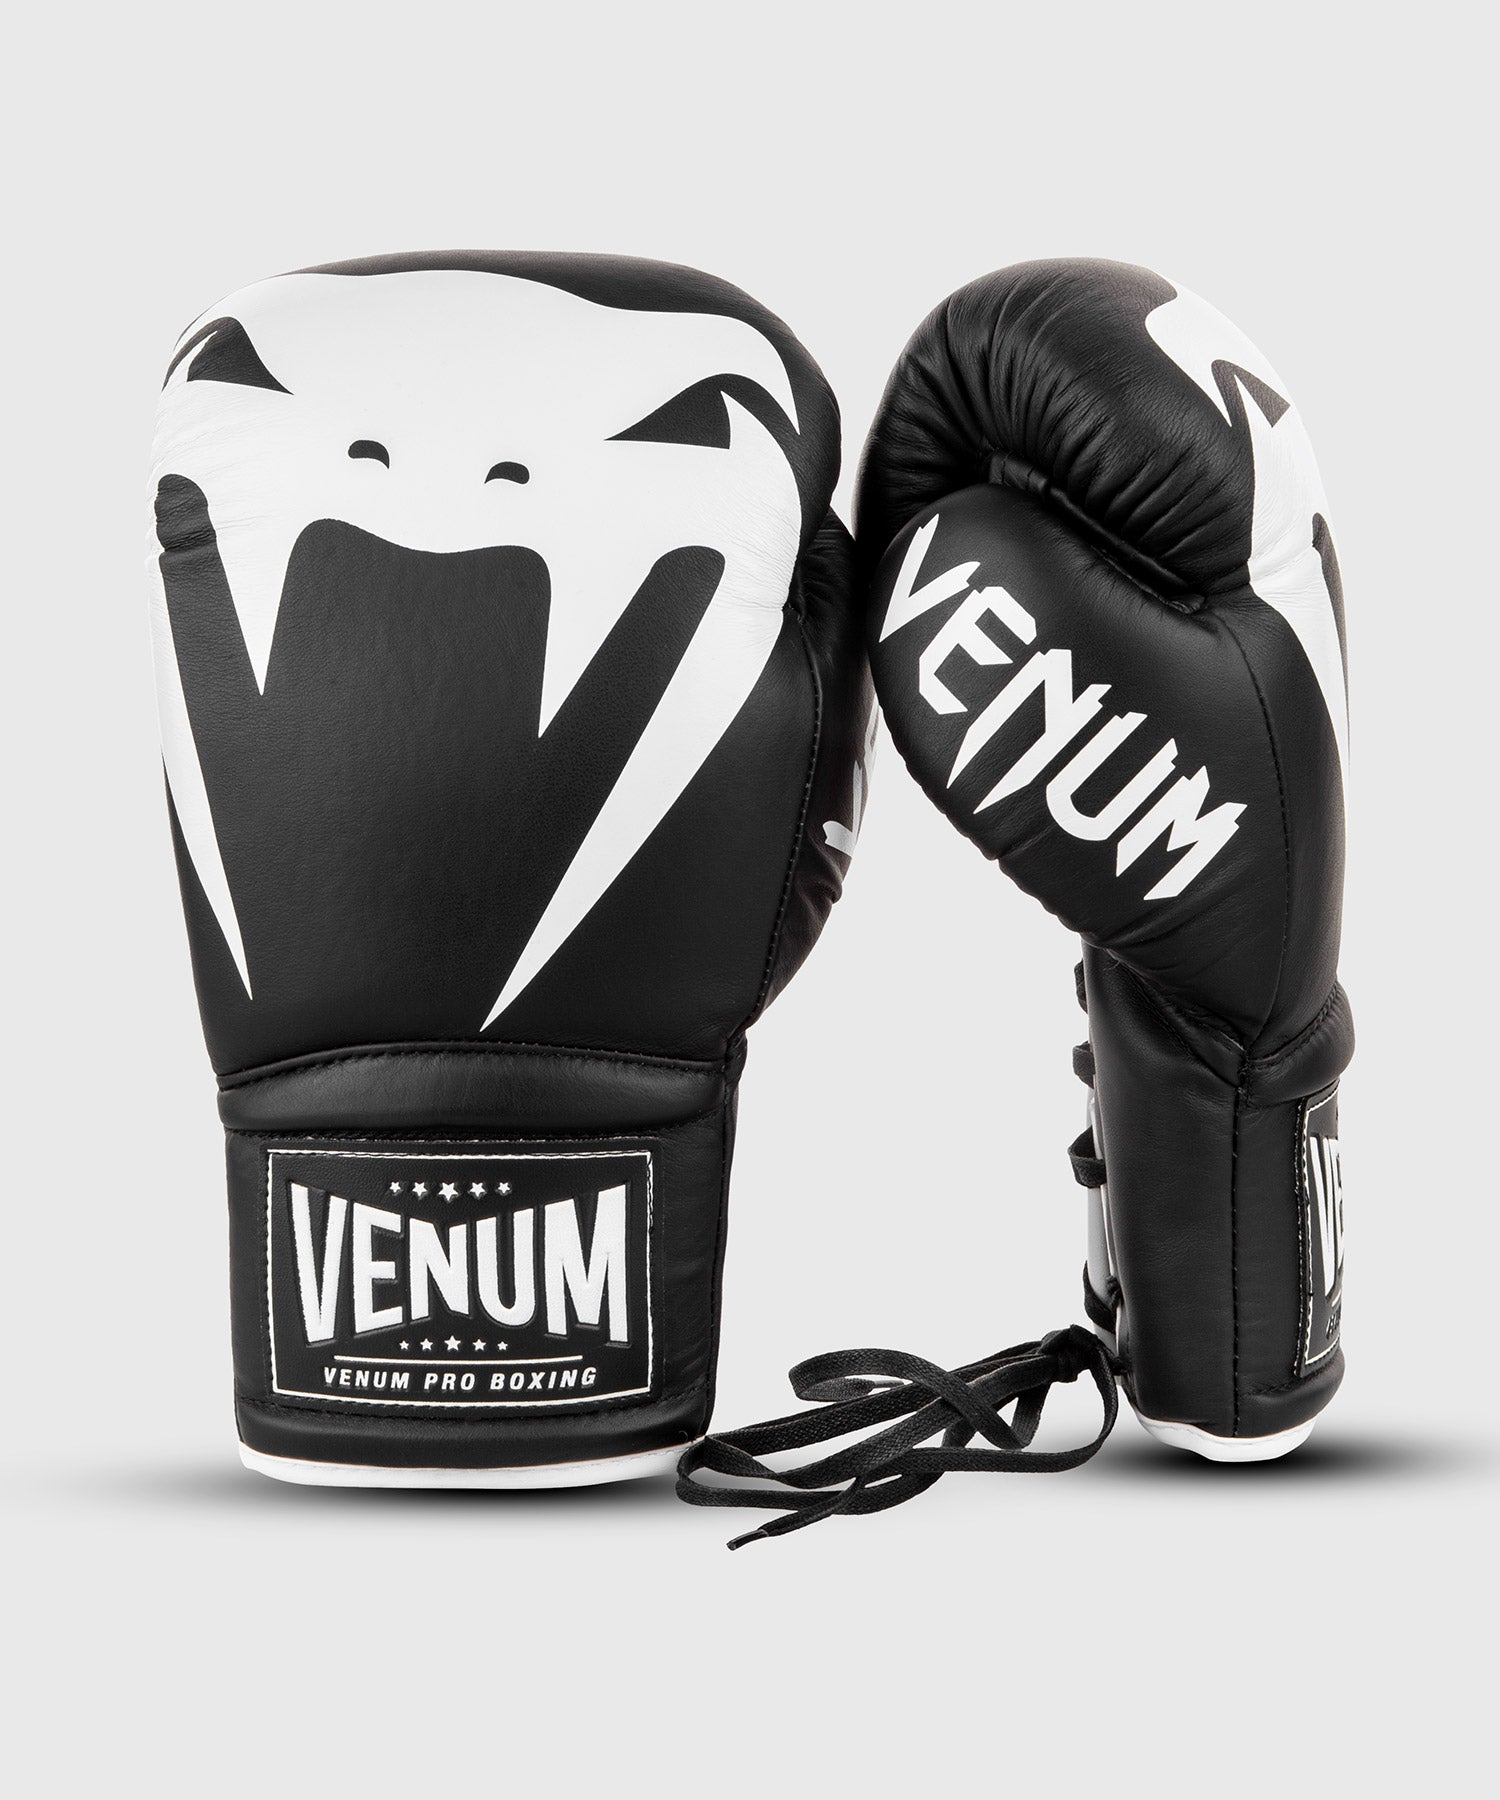 Venum Giant 2.0 Pro Boxing Gloves - With Laces - Black/White - Venum